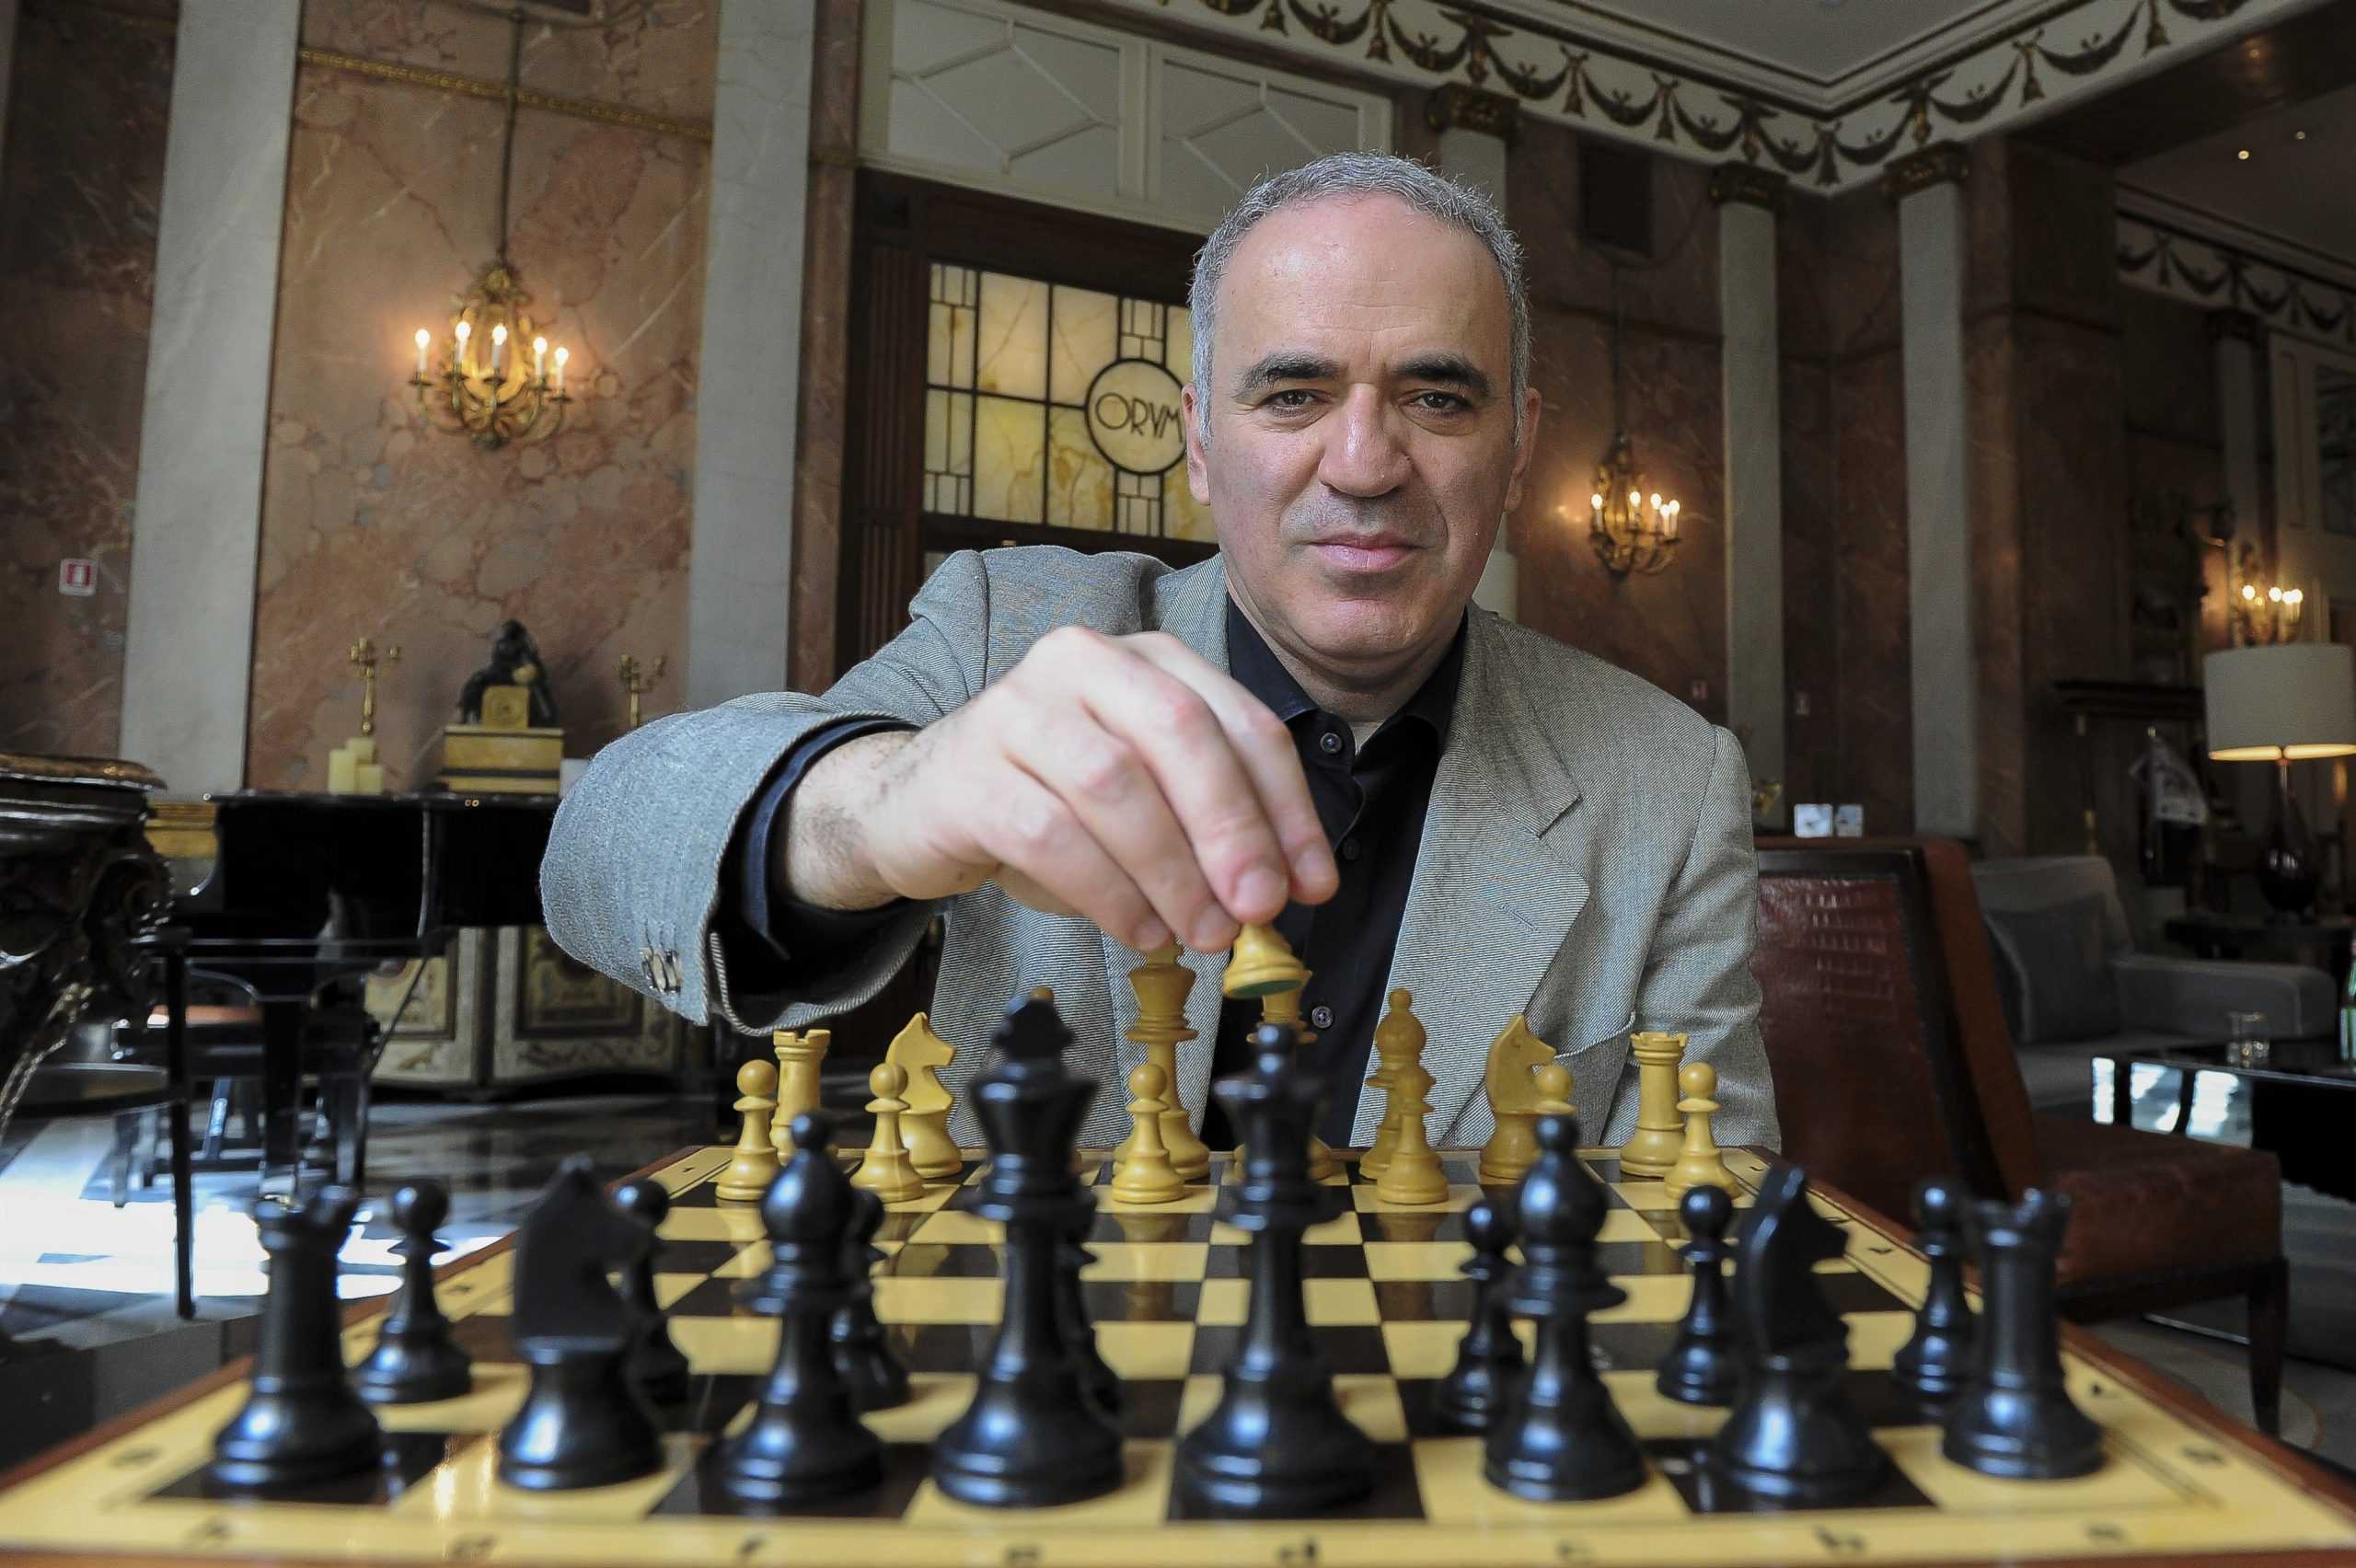 Гарри Каспаров, известный шахматист и общественный деятель, был внесен в реестр Росфинмониторинга, где фигурируют лица, подозреваемые в экстремизме или терроризме